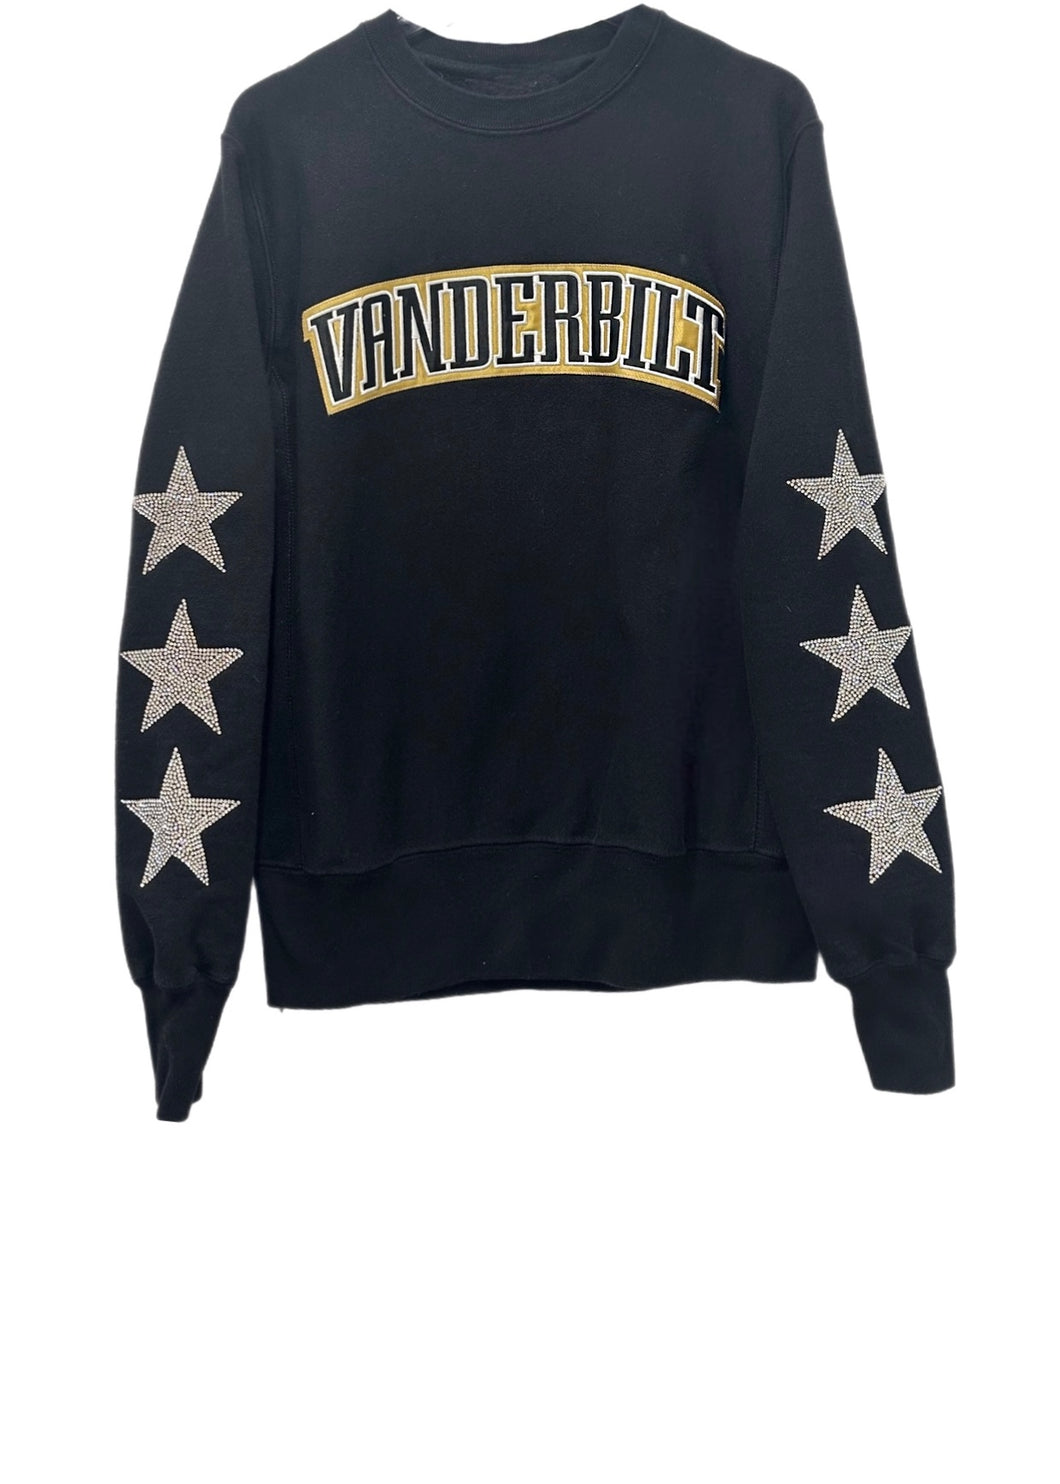 Vanderbilt University, One of a KIND Vintage Sweatshirt with Three Crystal Star Design